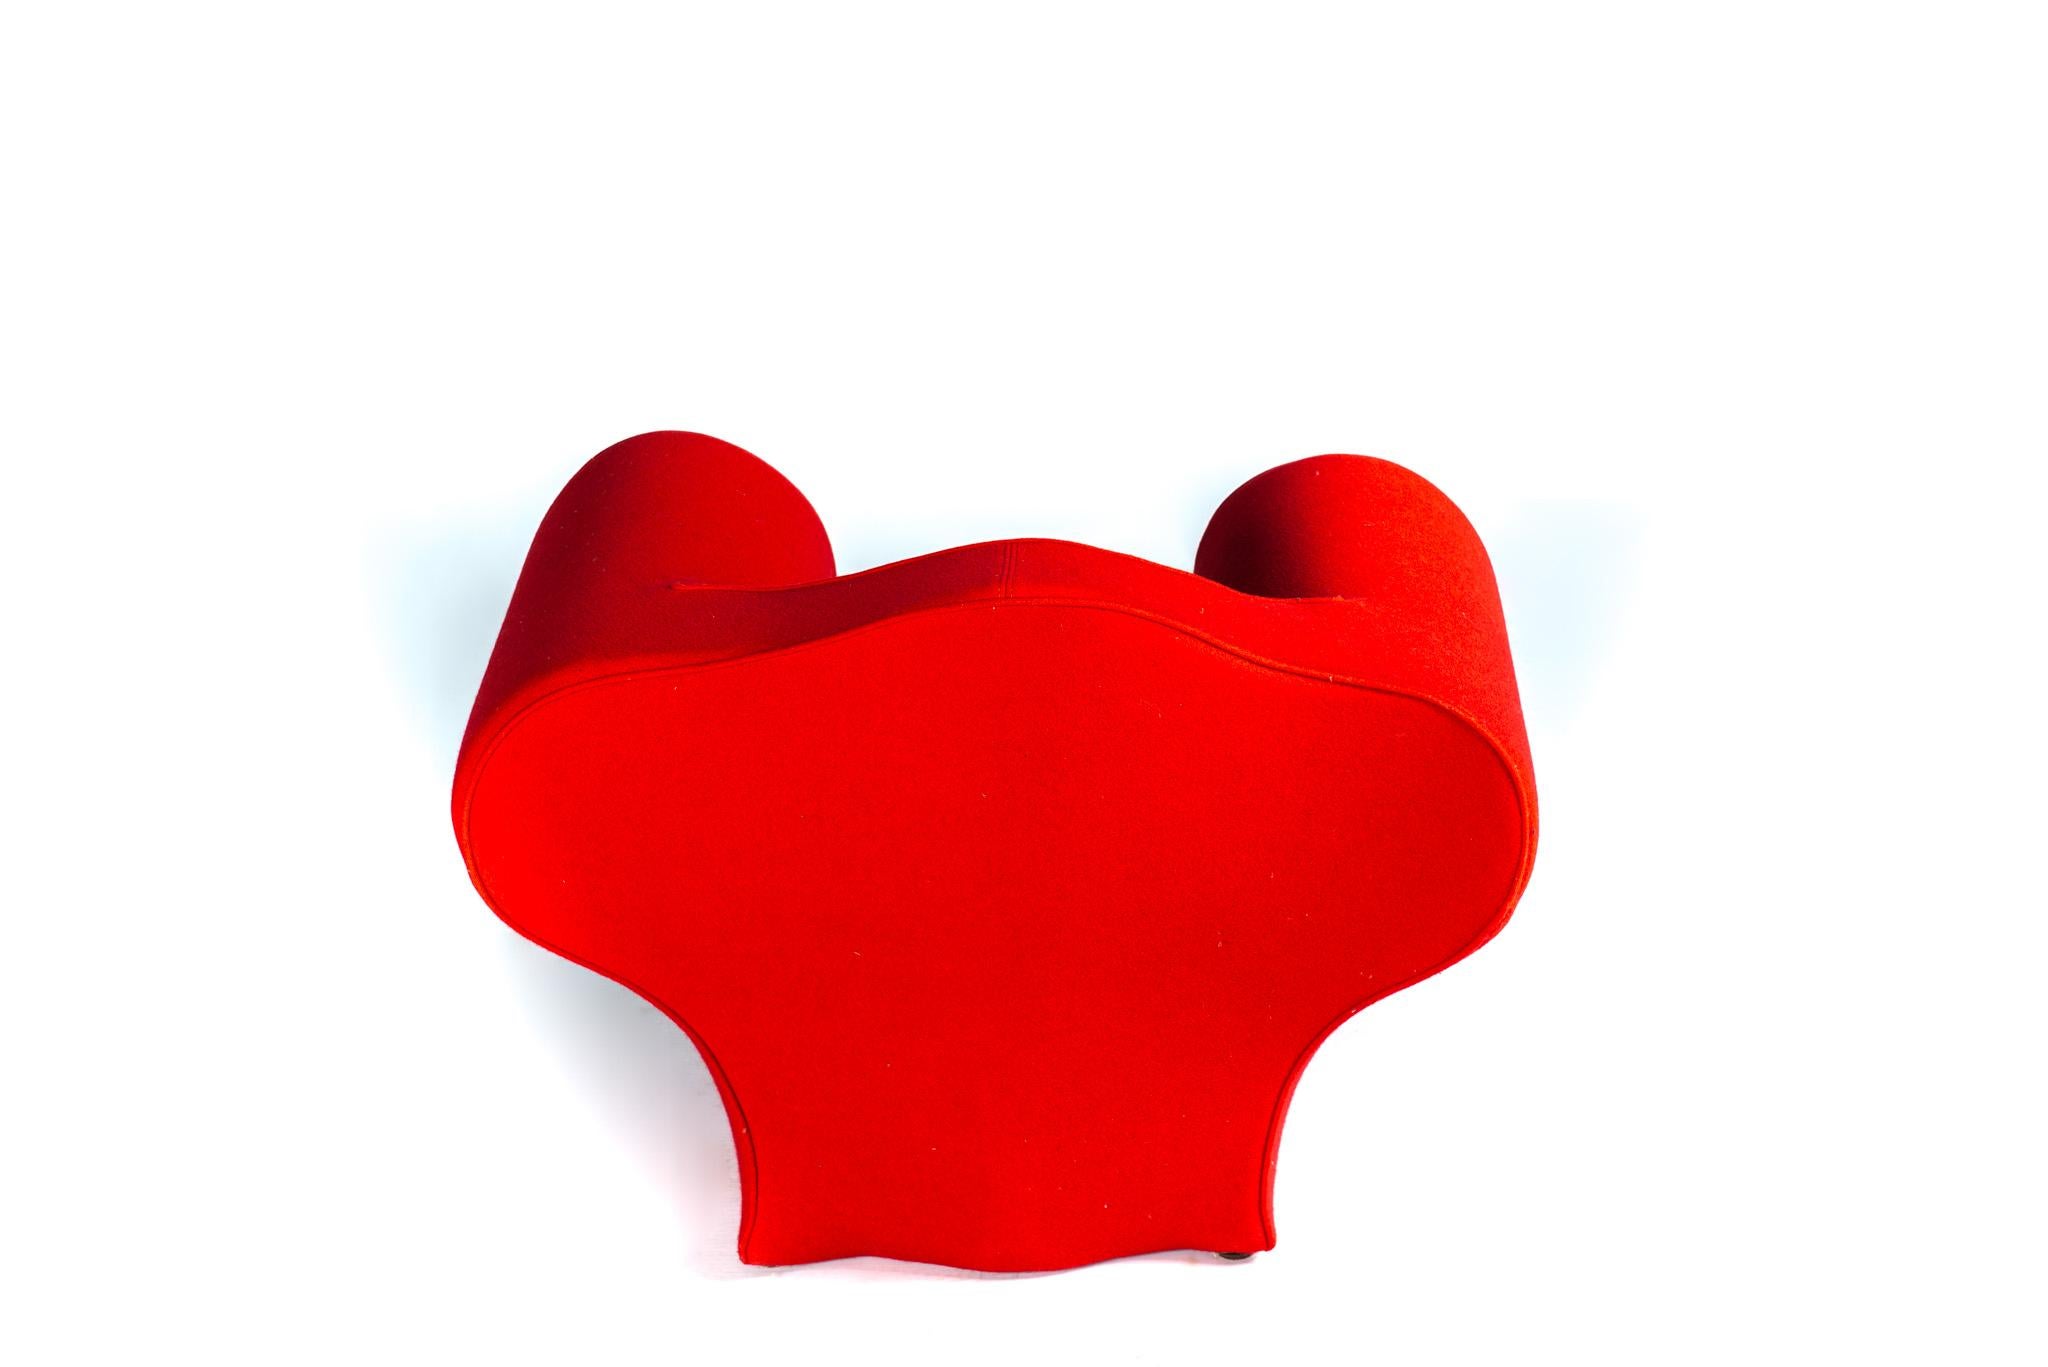 Fauteuil pour enfant Kleiner Sessel von Ron Arad für Moroso aus dem Jahr 1989, der mit rotem Lack überzogen ist.

Hochwertigkeit :  60 cm, Sitzhöhe: 29 cm, Länge: 80 cm,  profondeur 47 cm. 

Ron Arad ist ein zeitgenössischer industrieller Designer,